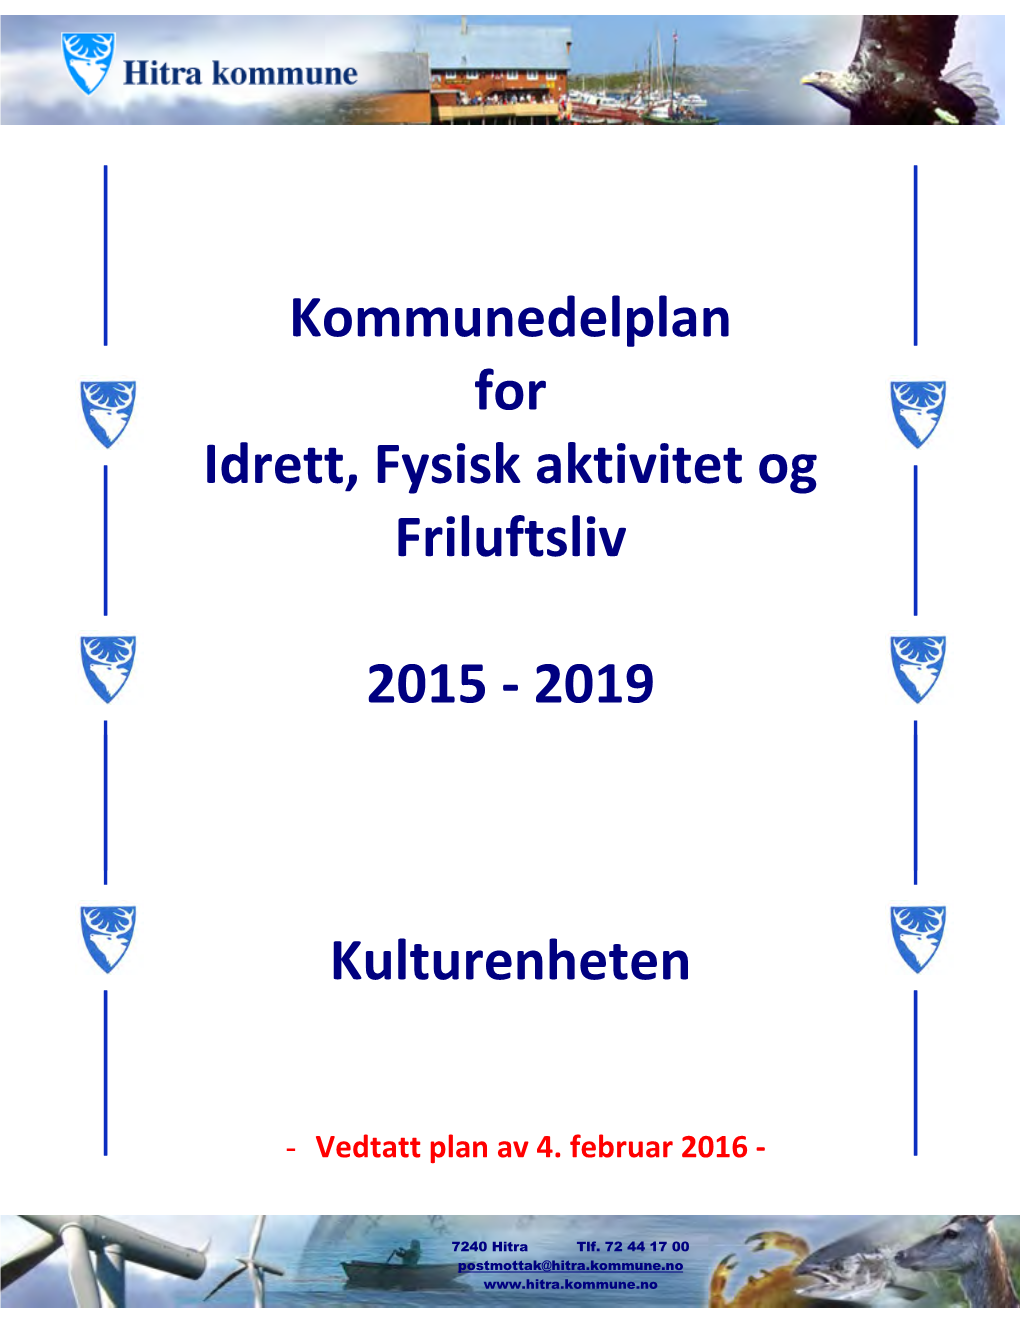 Kommunedelplan for Idrett, Fysisk Aktivitet Og Friluftsliv 2015 - 2019» Slik Den Framkommer I Vedlegget Til Saken